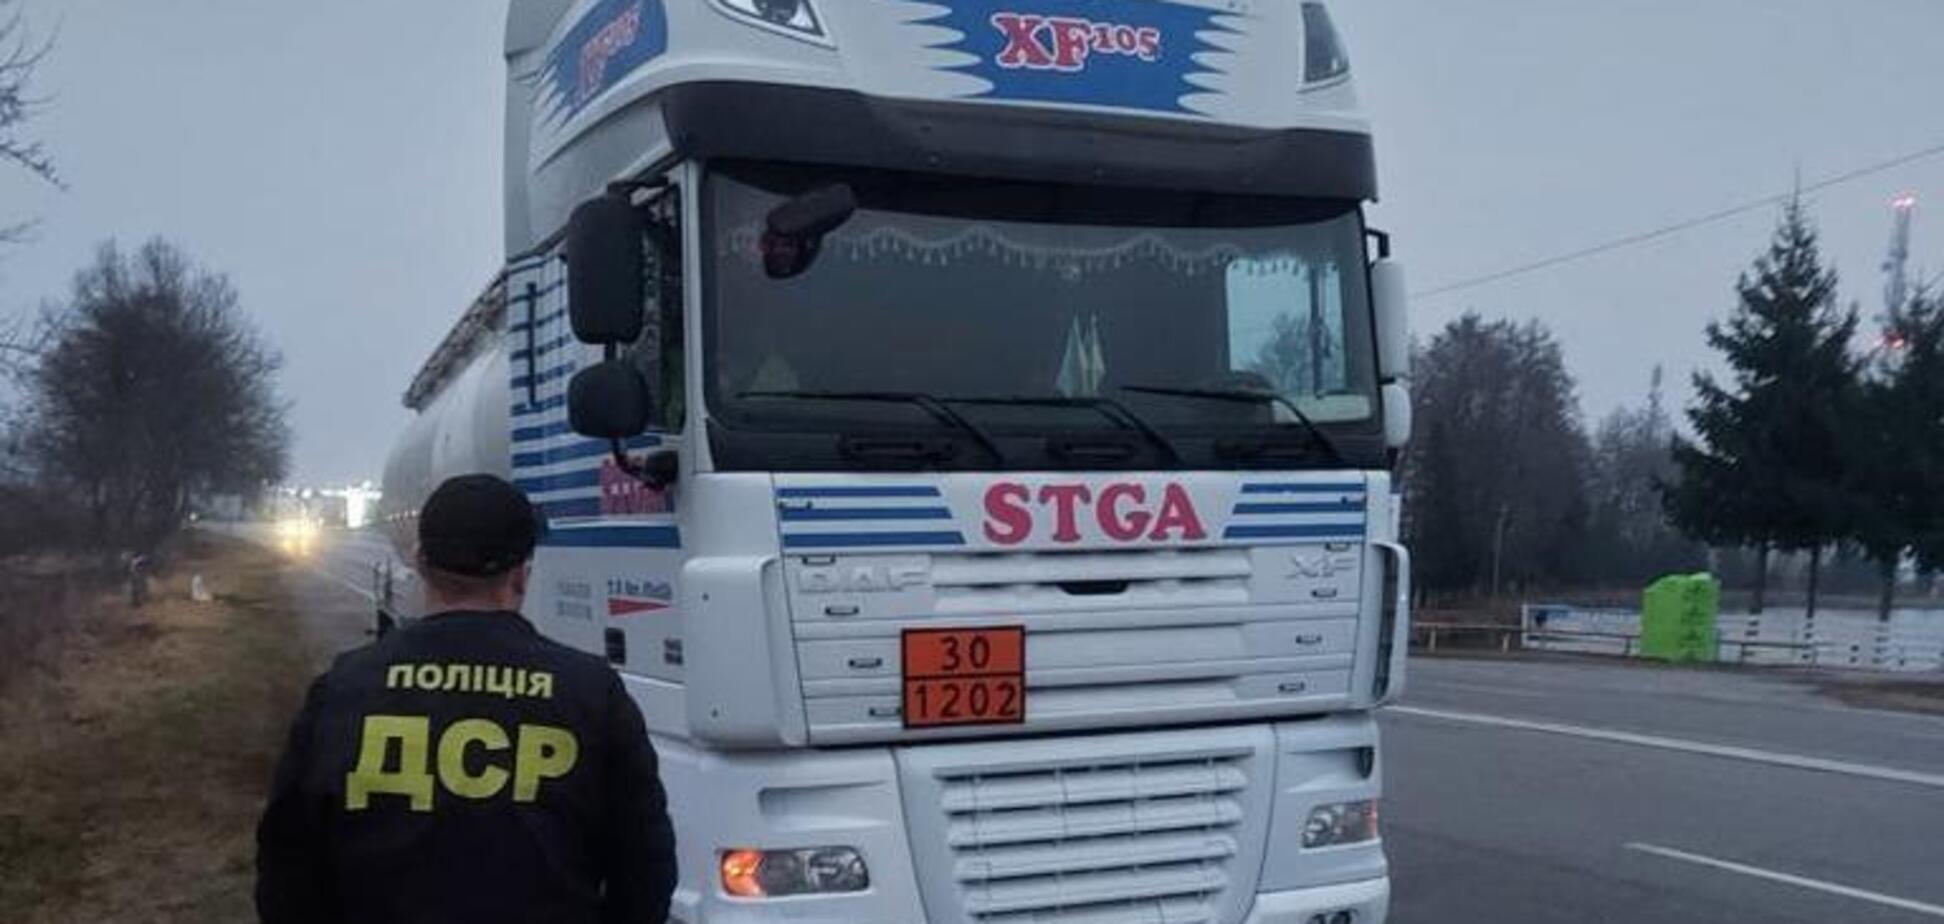 На Прикарпатье изъяли грузовик с более чем 6 тоннами нелегального дизеля. Фото